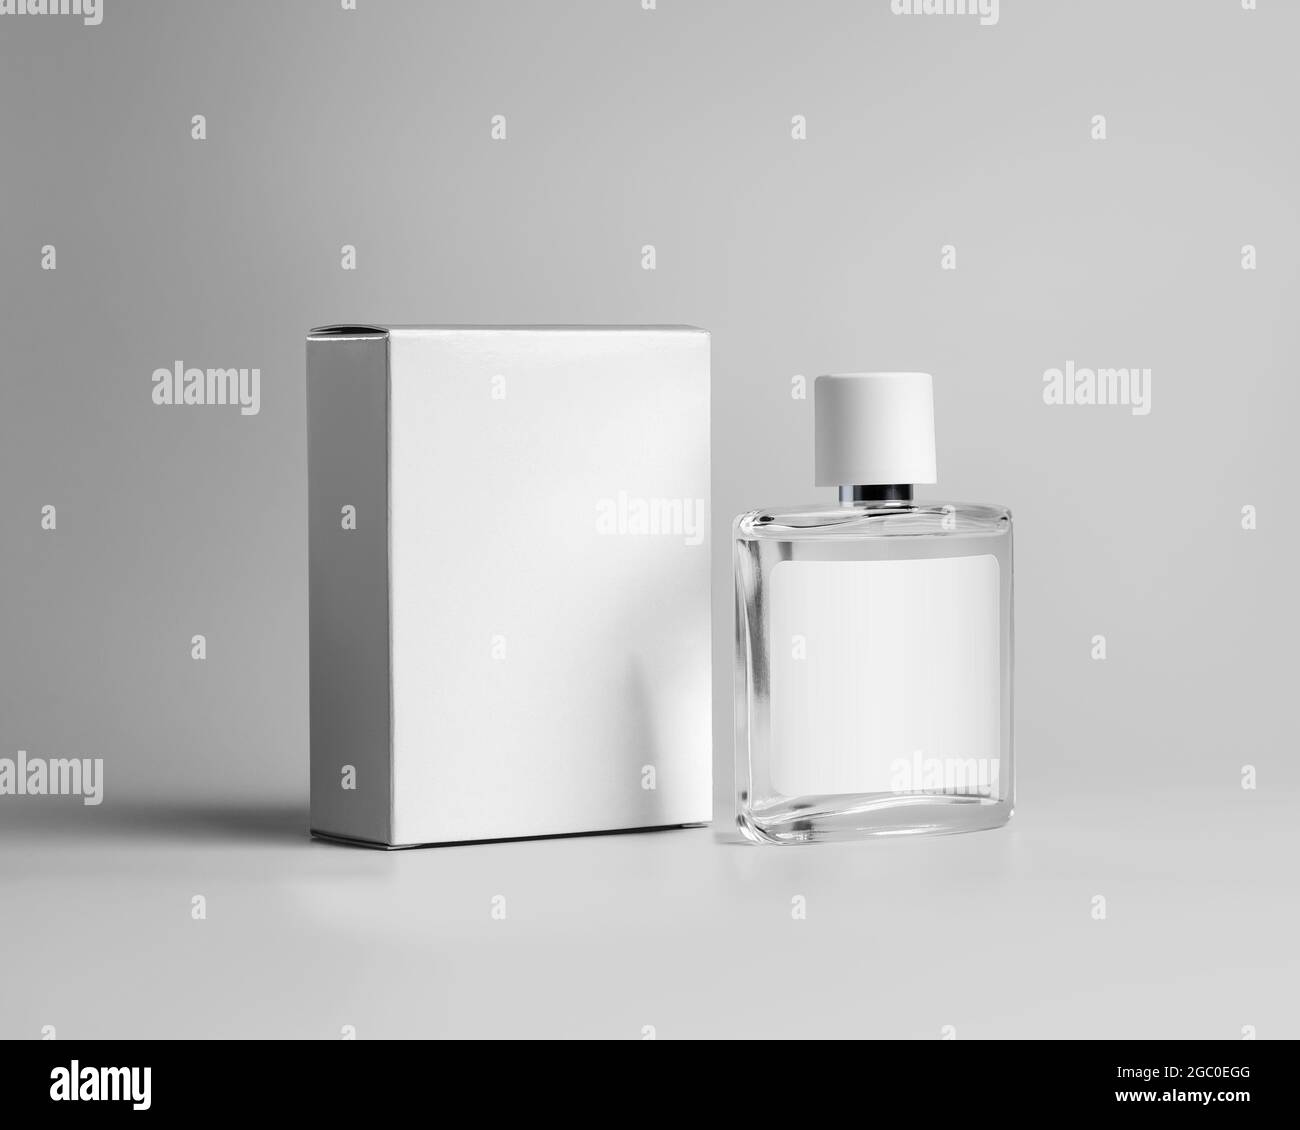 Modello di una bottiglia di vetro trasparente per profumo, con etichetta per il disegno, una scatola di cartone bianca per un profumo di marca, fragranza. Pubblicità cosmetica Foto Stock